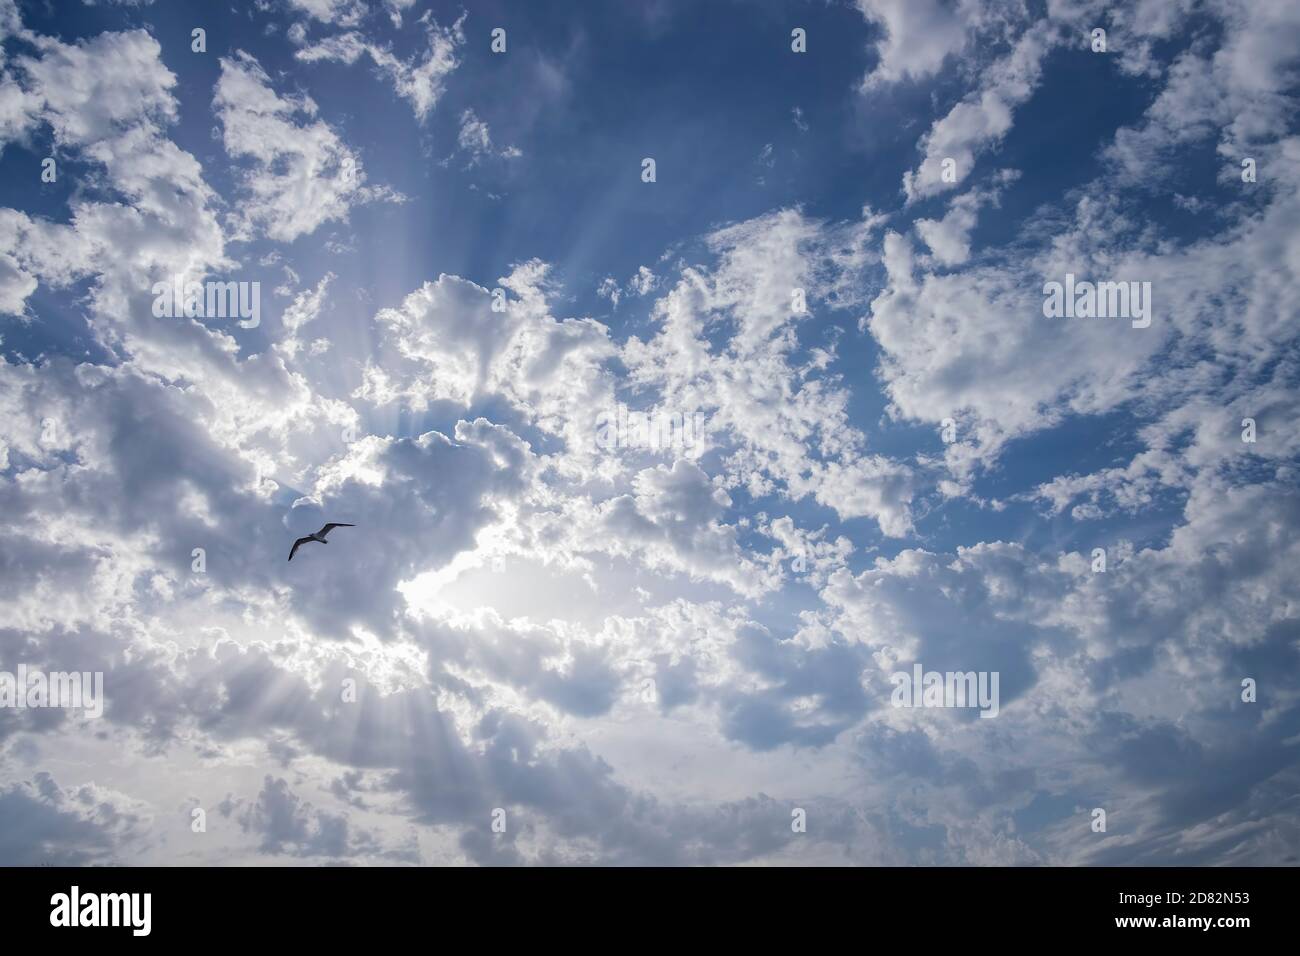 rayos de sol que se elevan a través de un cielo azul nublado con una gaviota volando contraluz Foto de stock